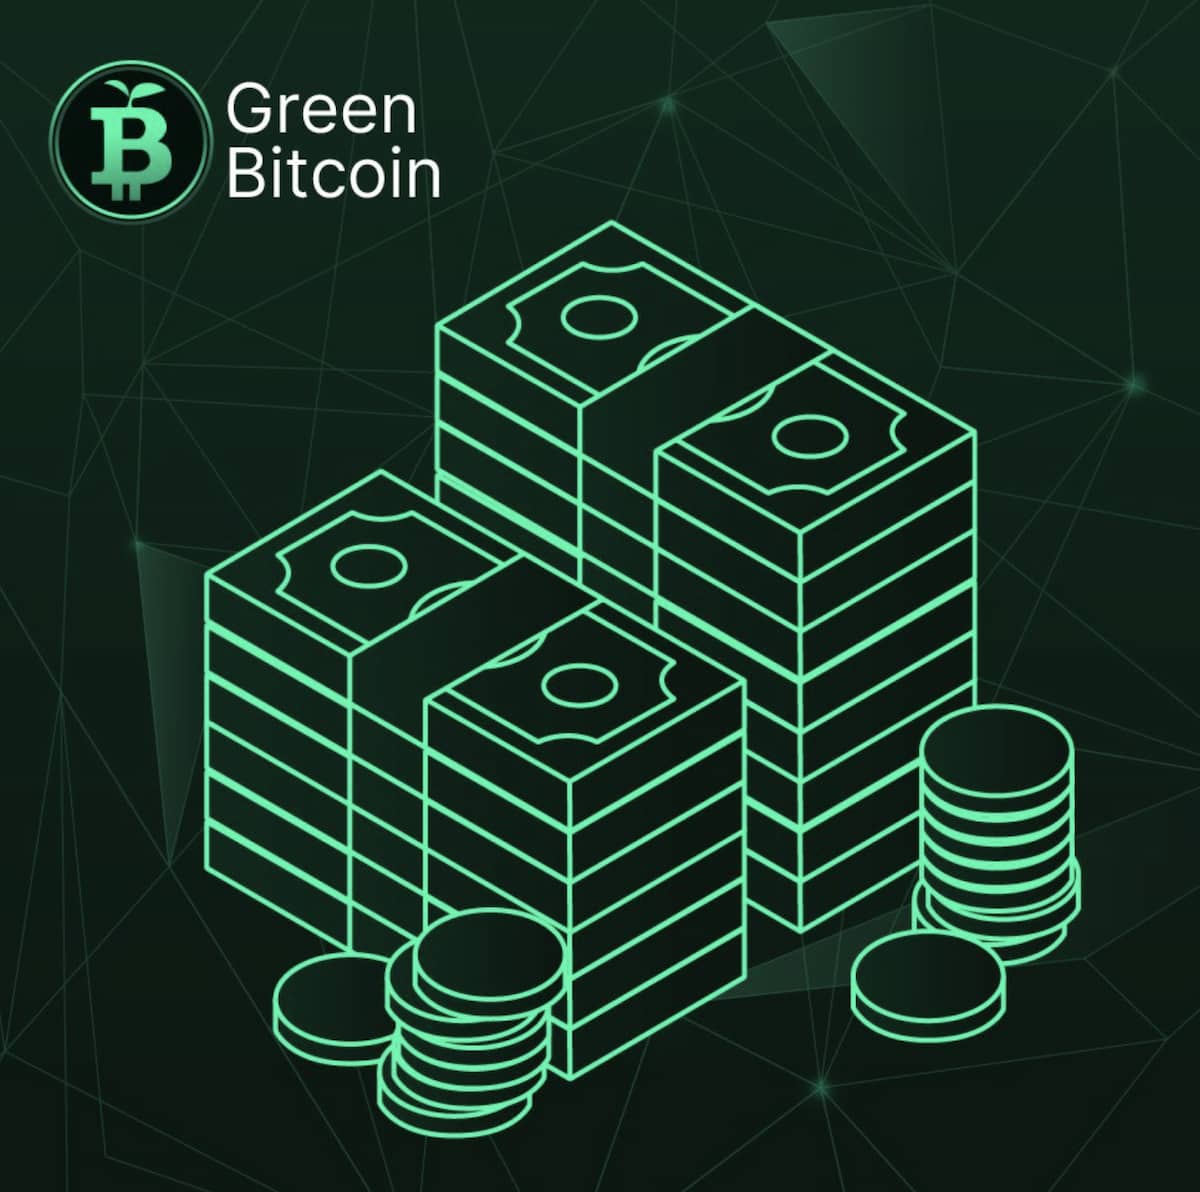 Đặt Cược Với Green Bitcoin, Kiếm Thưởng Lớn Bằng Cách Dự Đoán Xu Hướng Giá Bitcoin